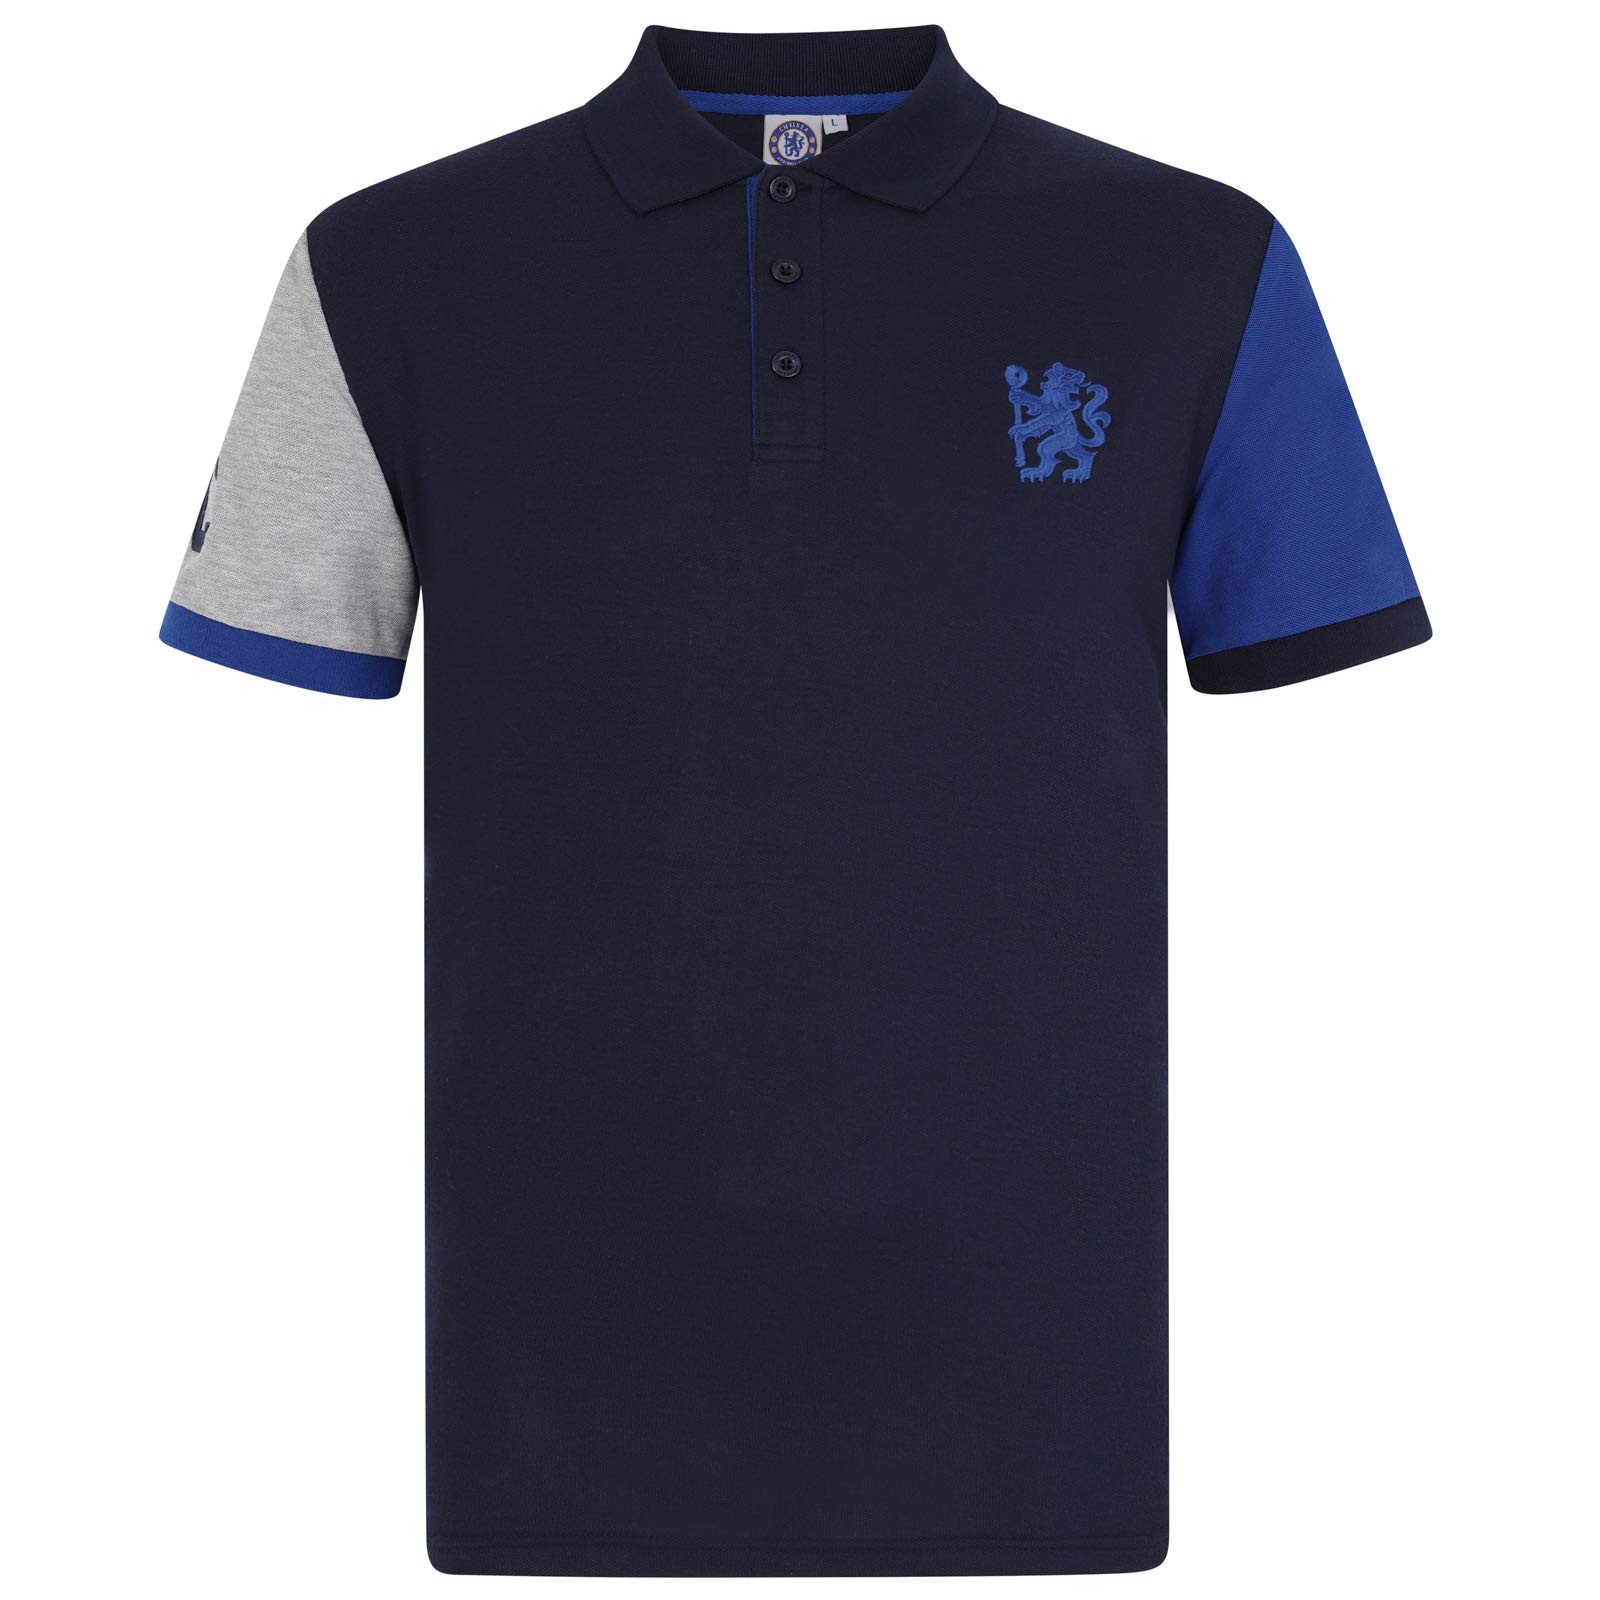 Chelsea FC Herren Polo-Shirt mit originalem Fußball-Wappen - Dunkelblau mit Kontrastärmeln - S